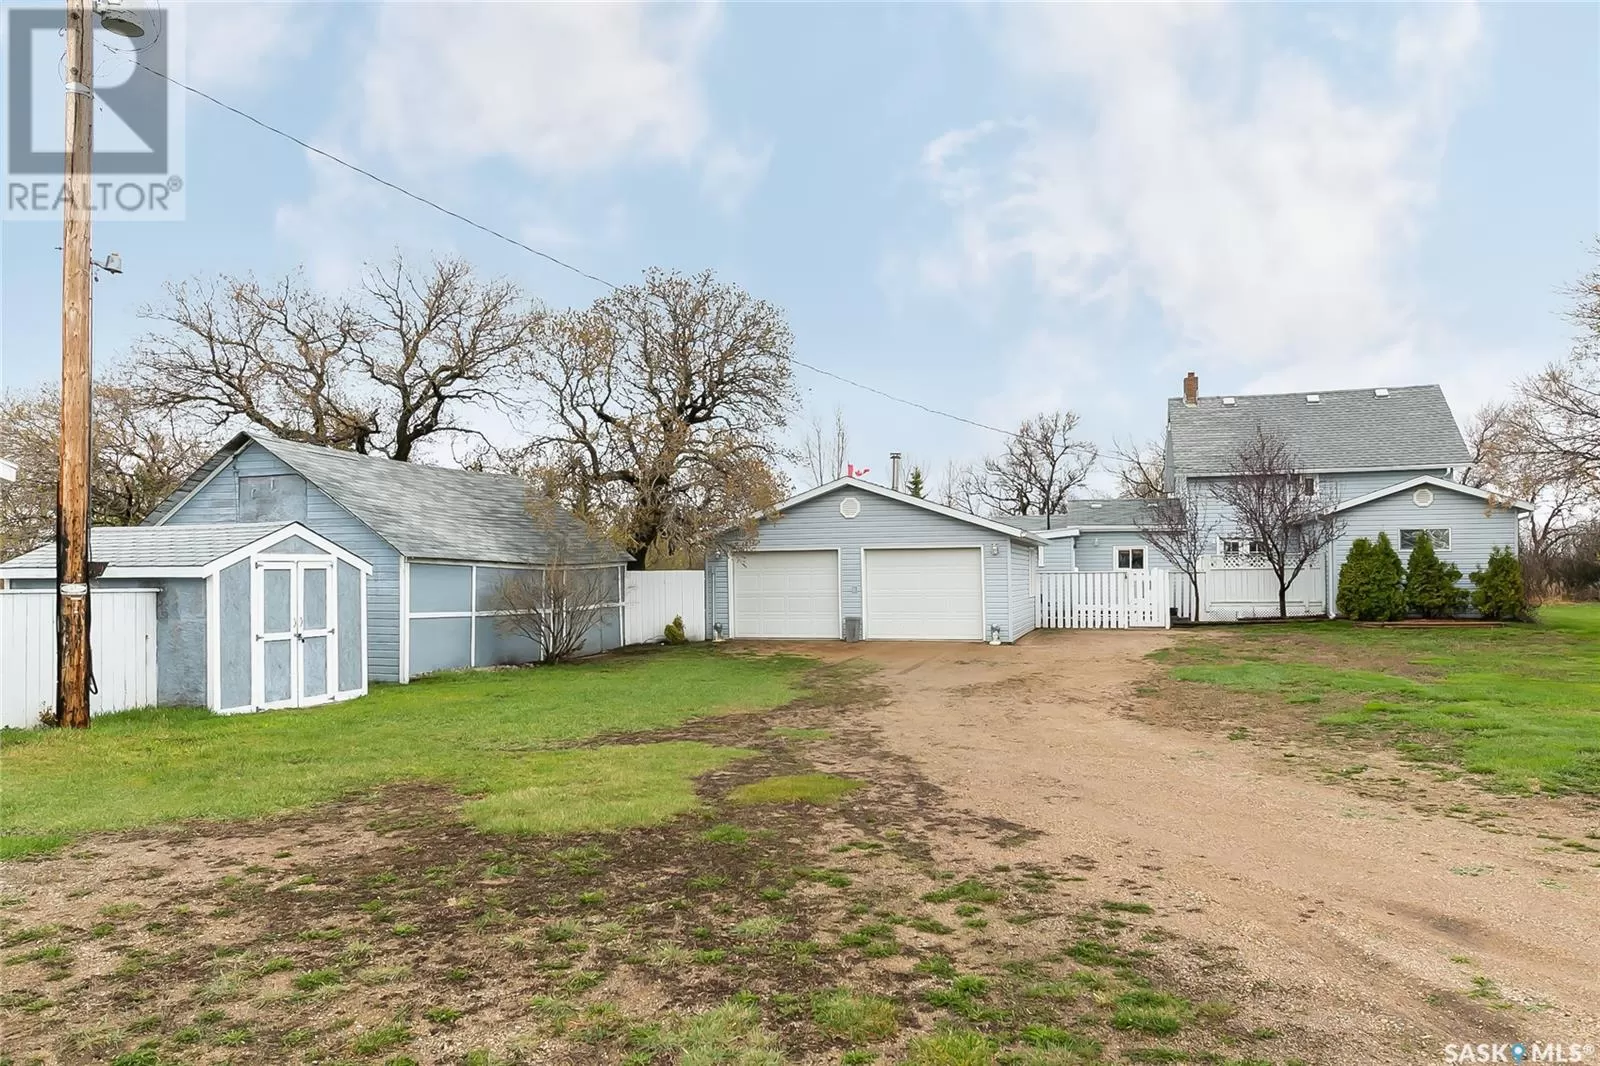 House for rent: Walker Acreage - 6.7 Acres, Lumsden Rm No. 189, Saskatchewan S4P 2Z1